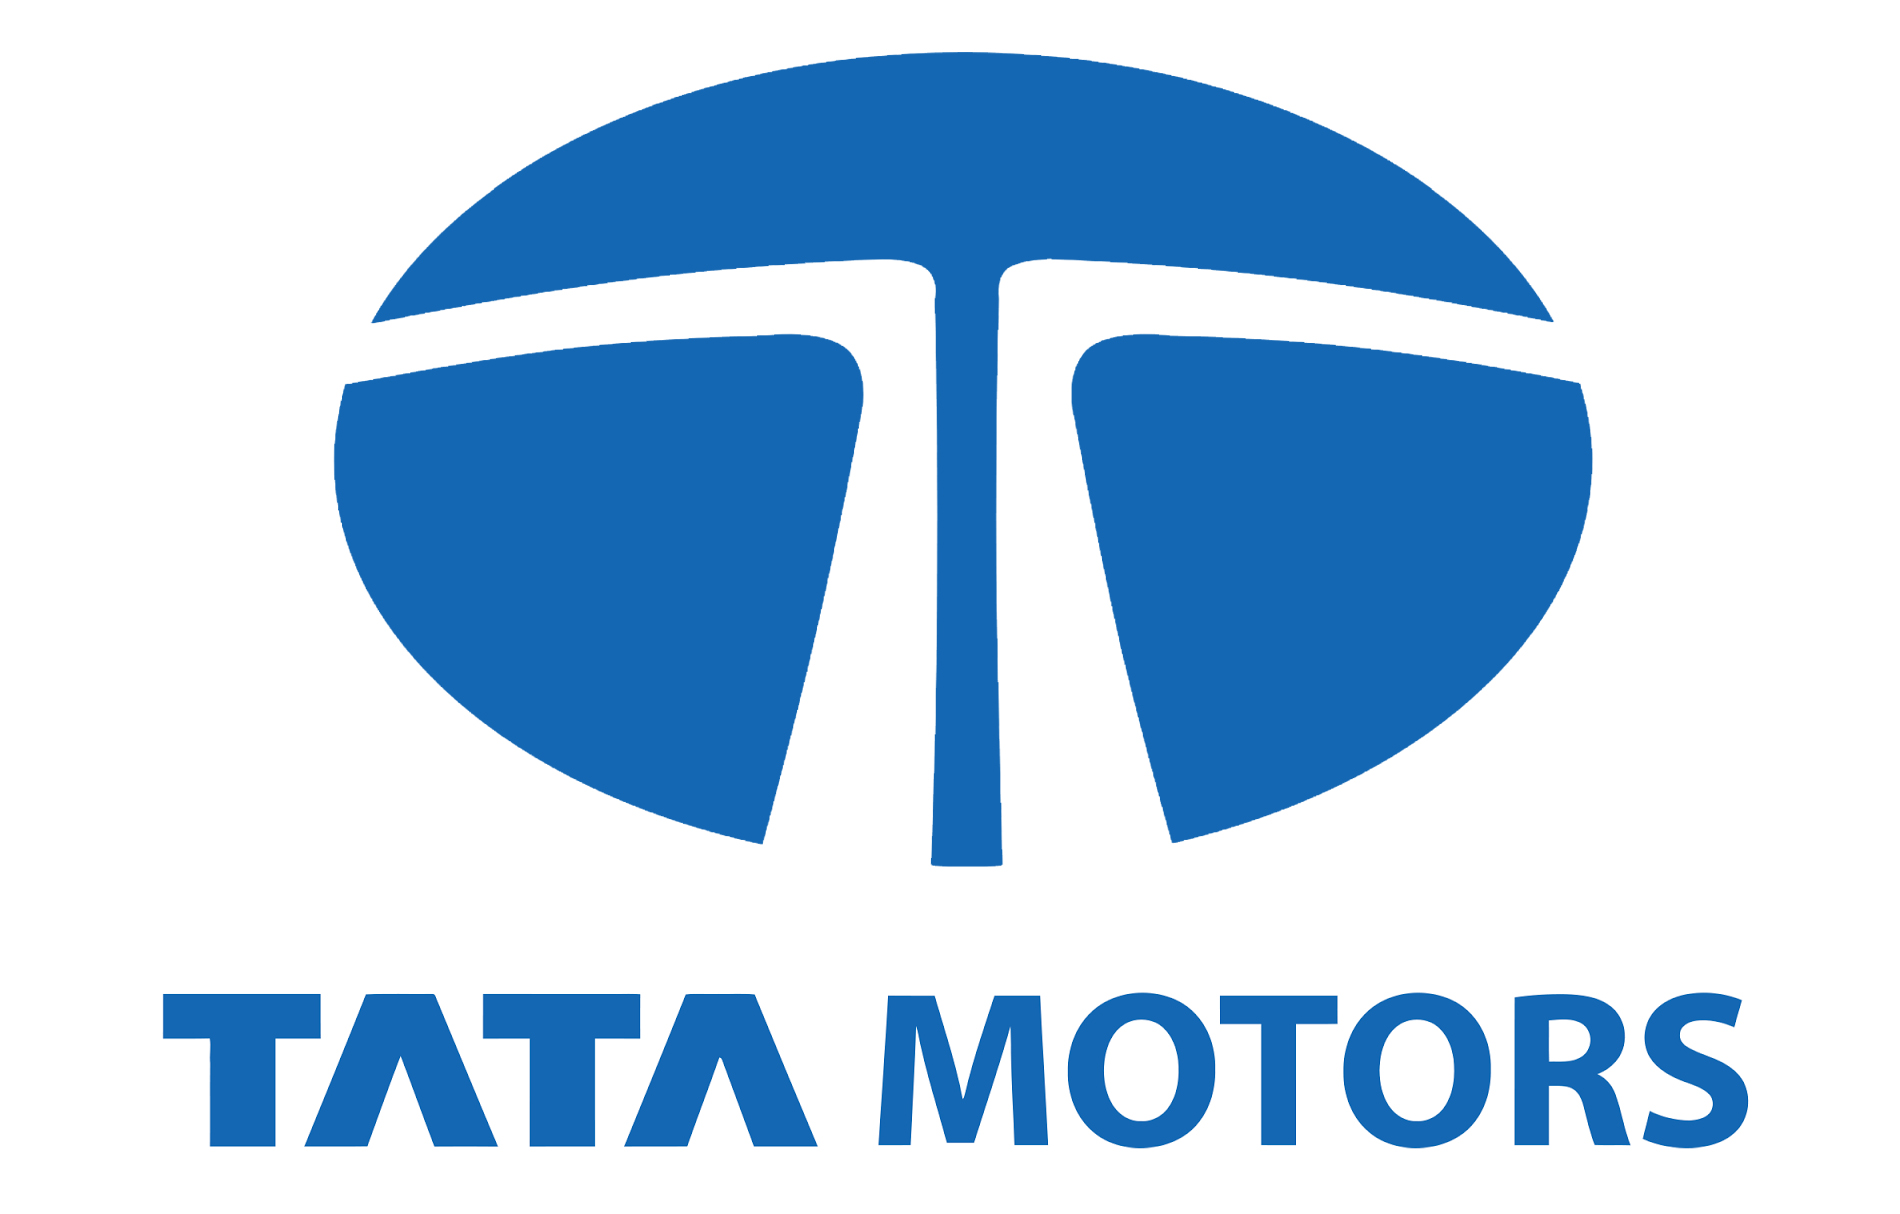 Tata Motors Cars Showroom - Cargo Motors|Show Room|Automotive